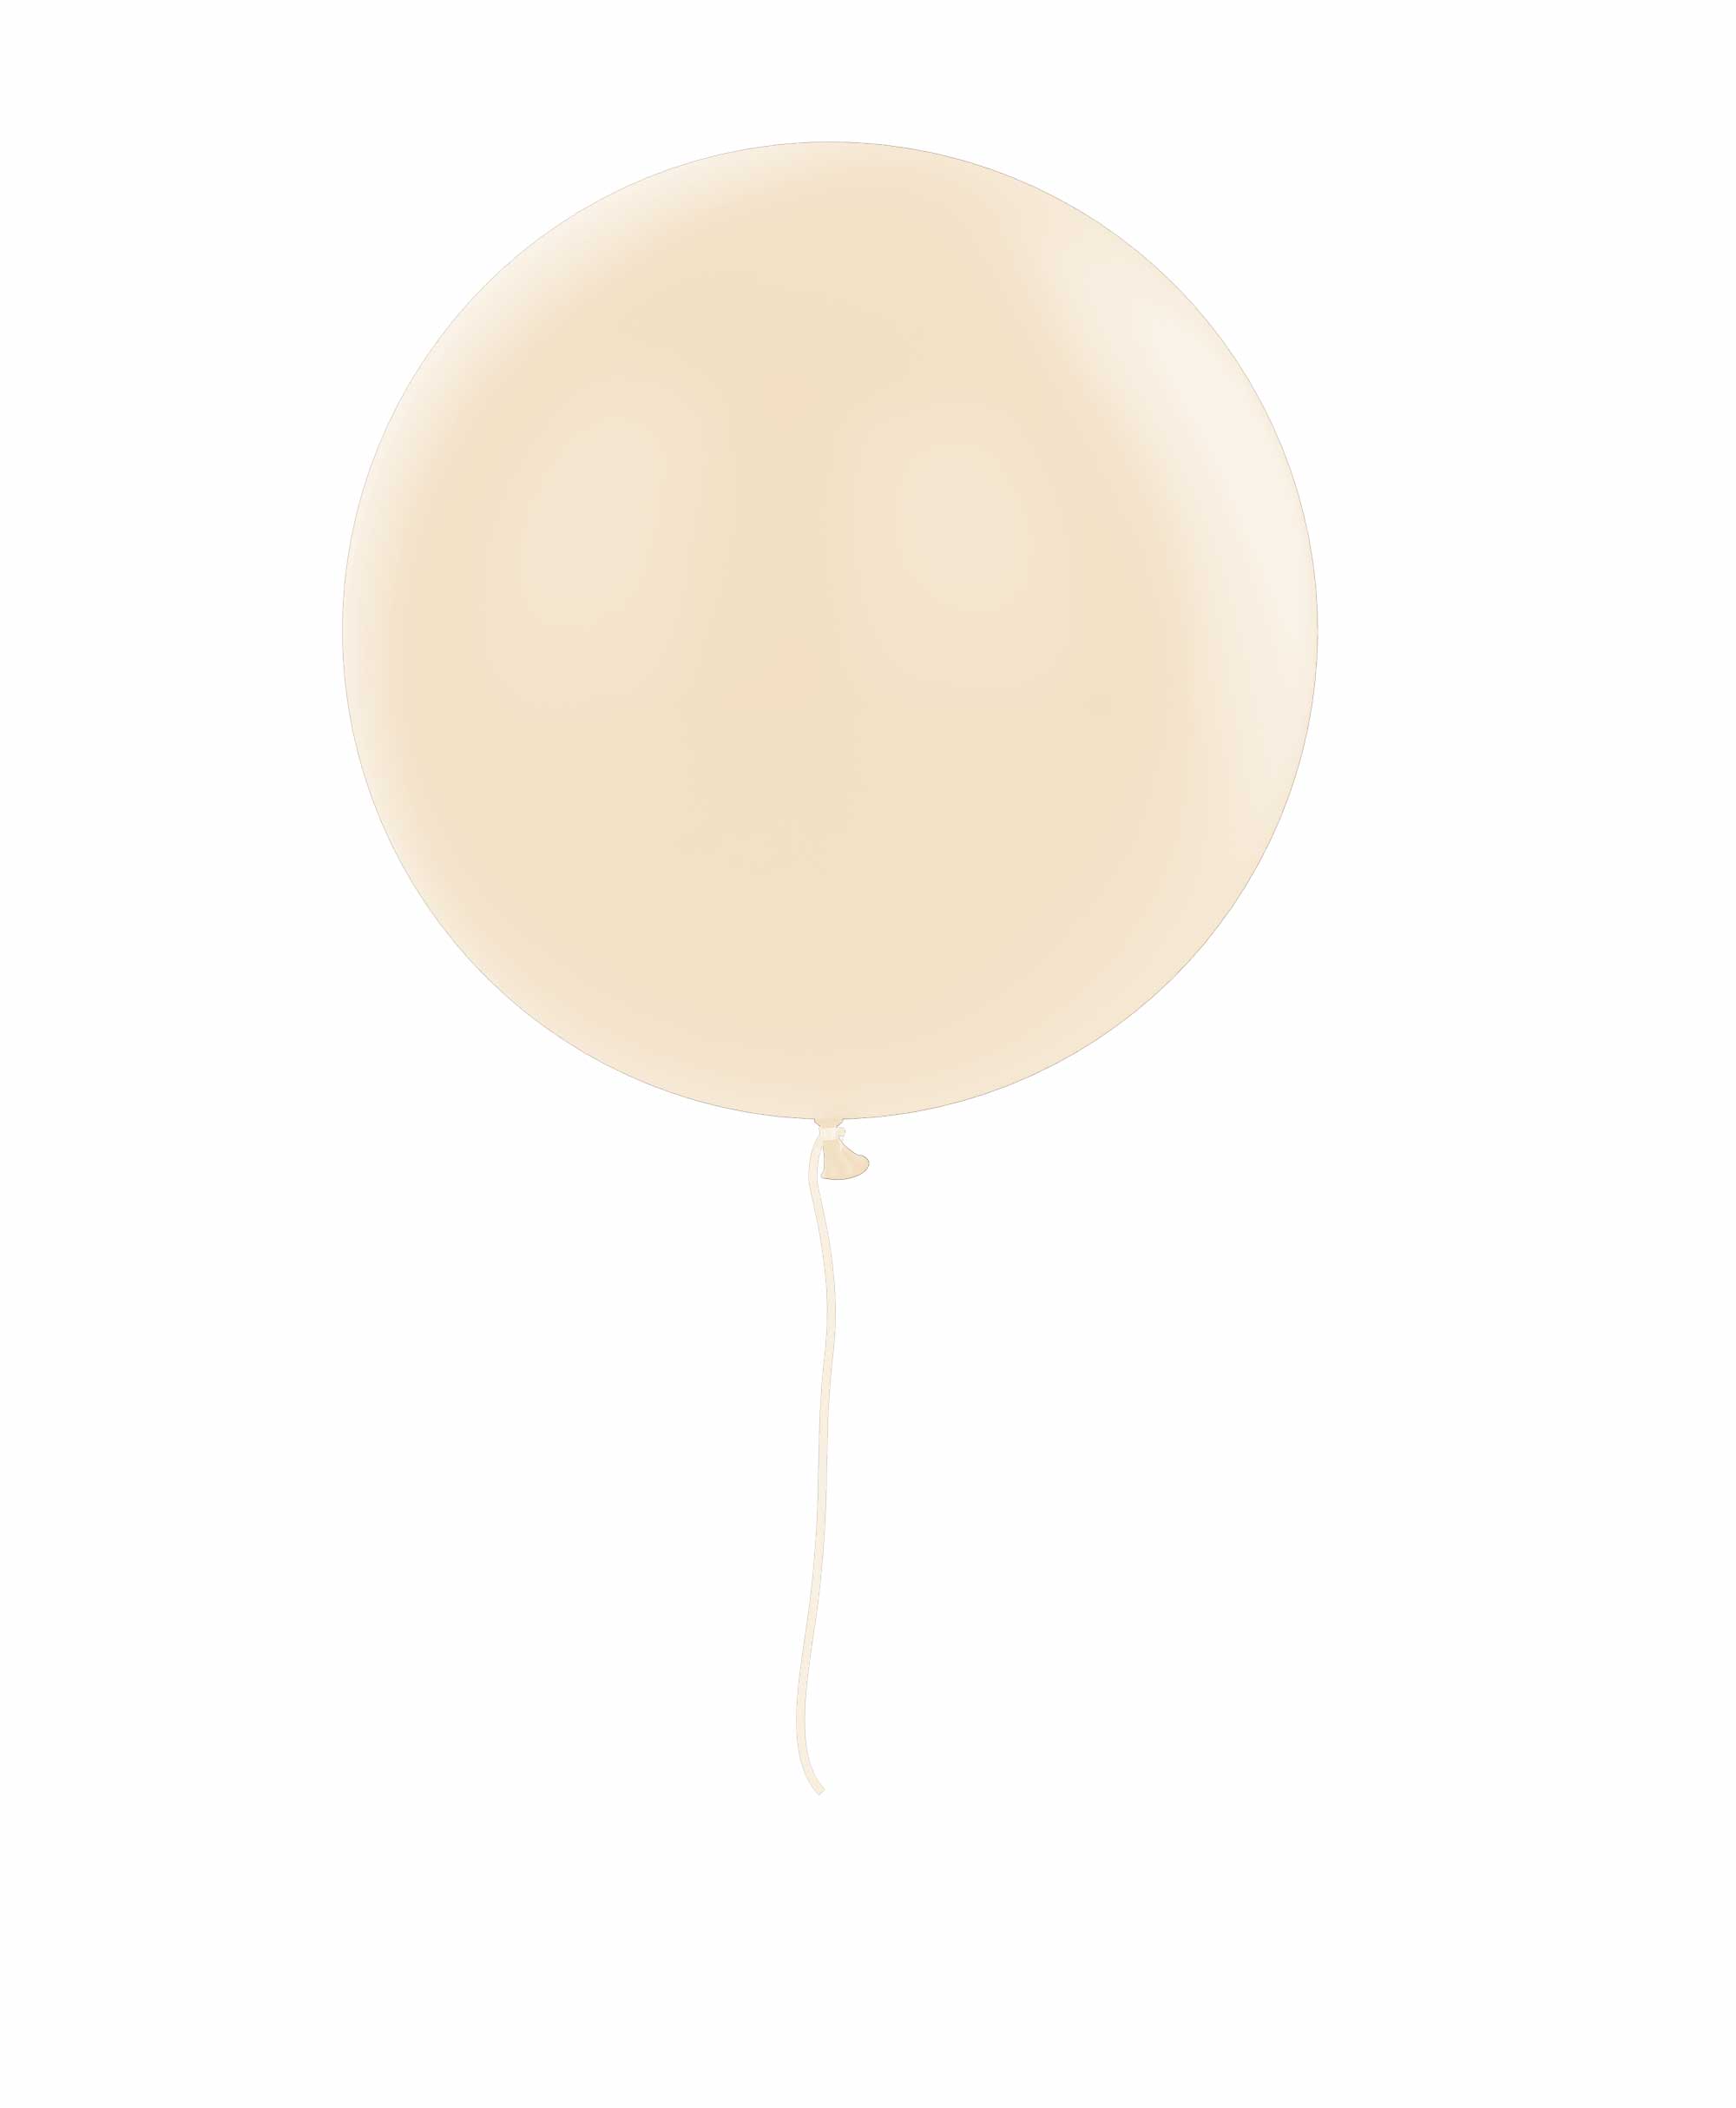 Peach balloon 36" - Blush Theme